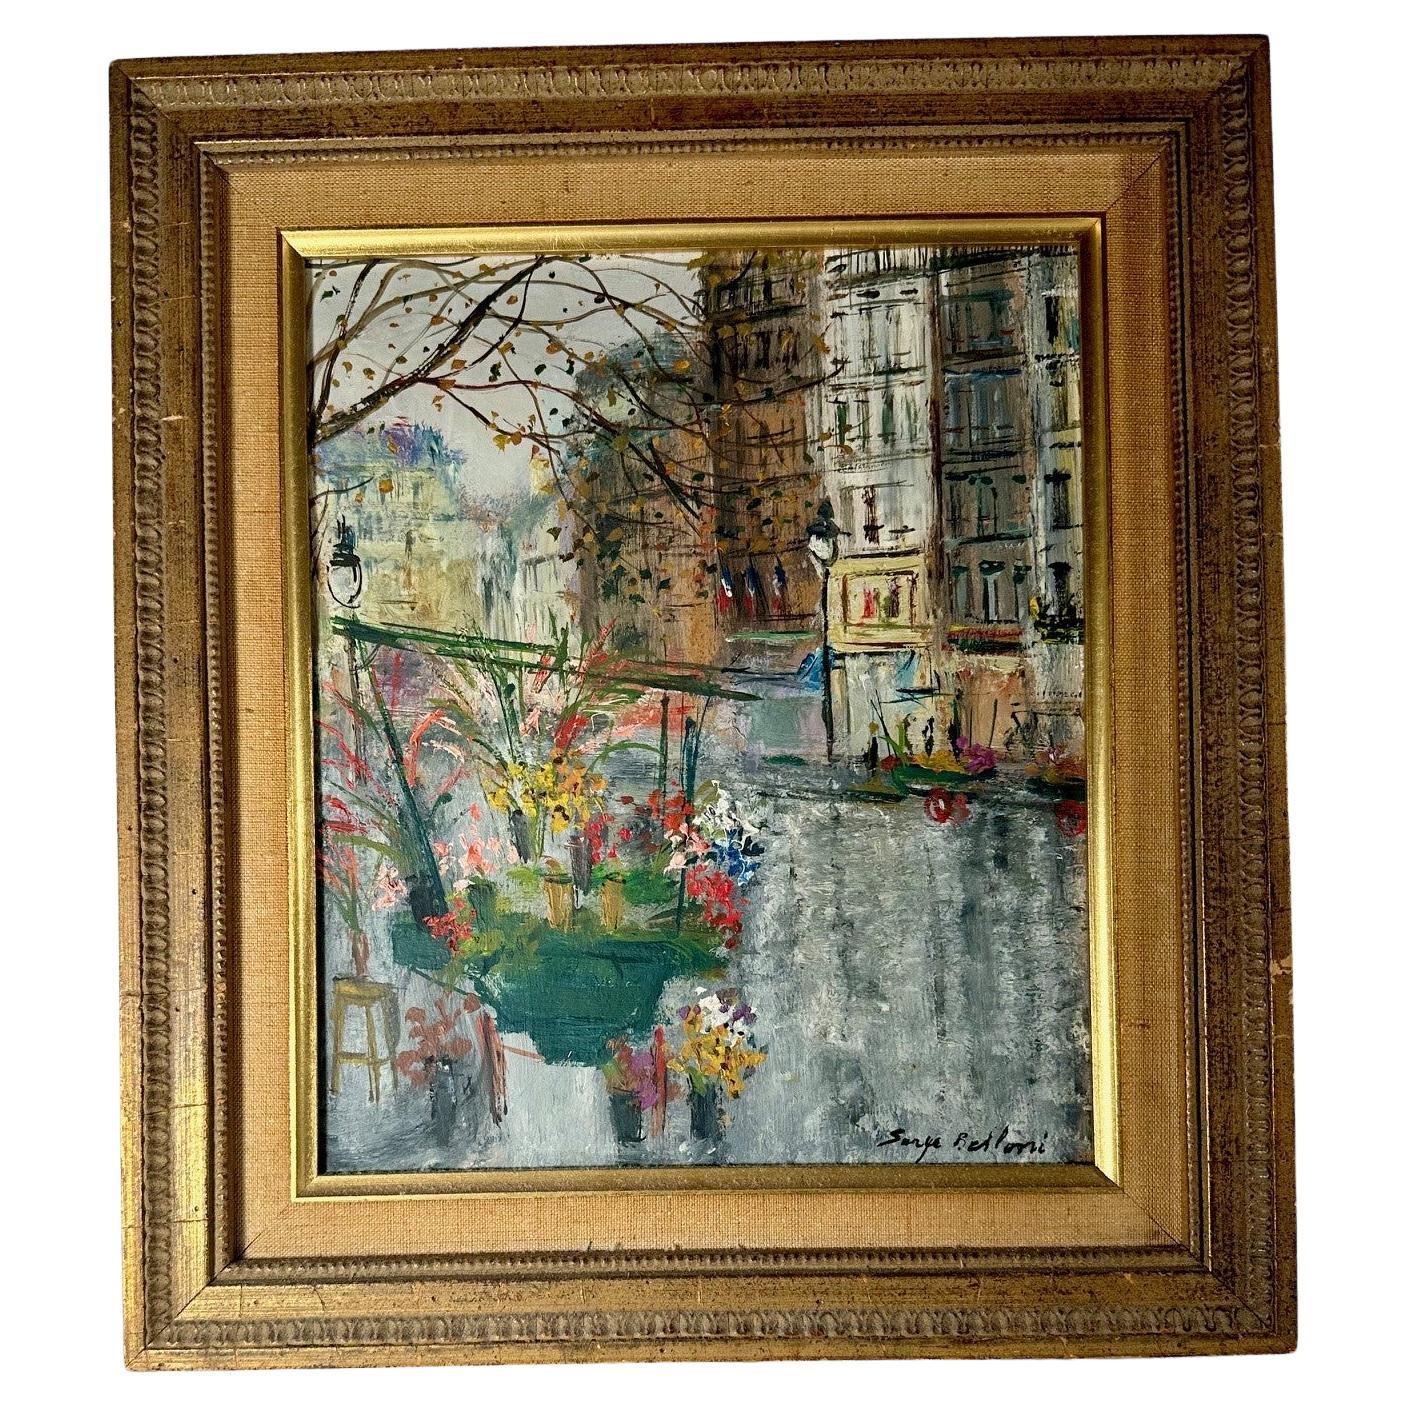 Paysage urbain parisien original de Serge Belloni. Peinture d'automne encadrée signée